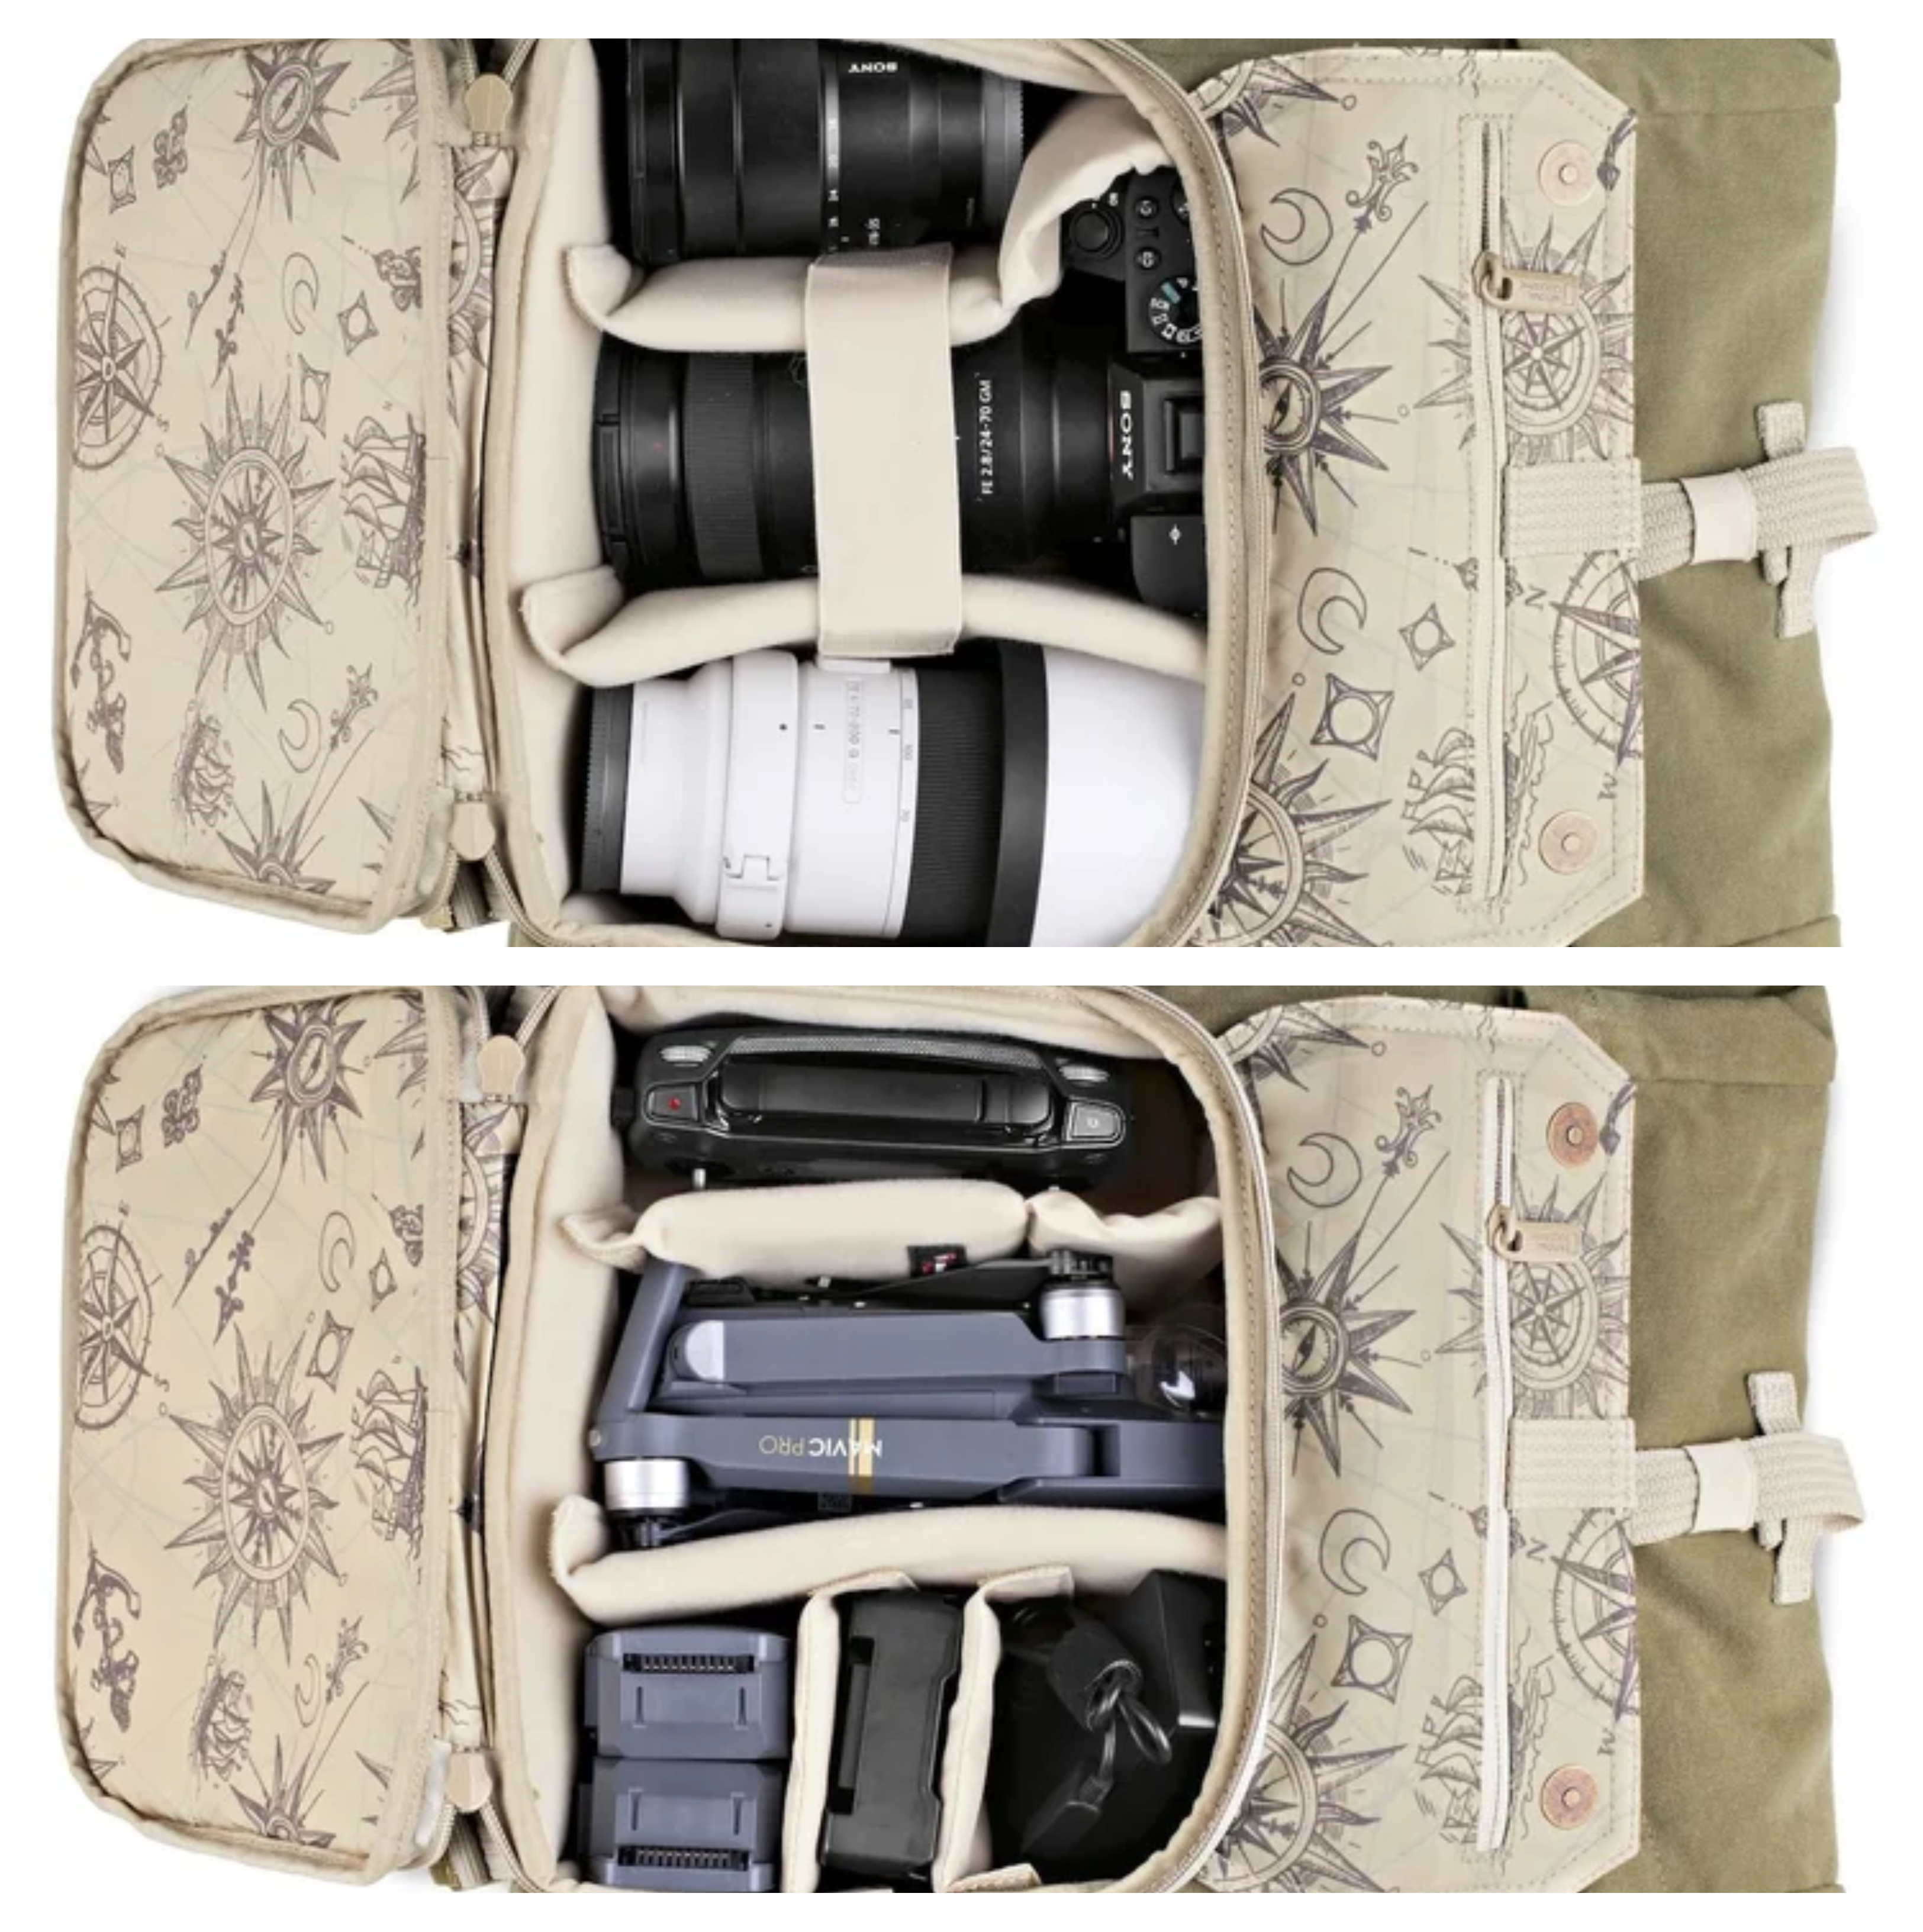 Fotobatoh National Geographic Earth Explorer Backpack S príde vhod na pohodlné a bezpeèné prenášanie fotoaparátov èi dronov aj s potrebným vybavením.